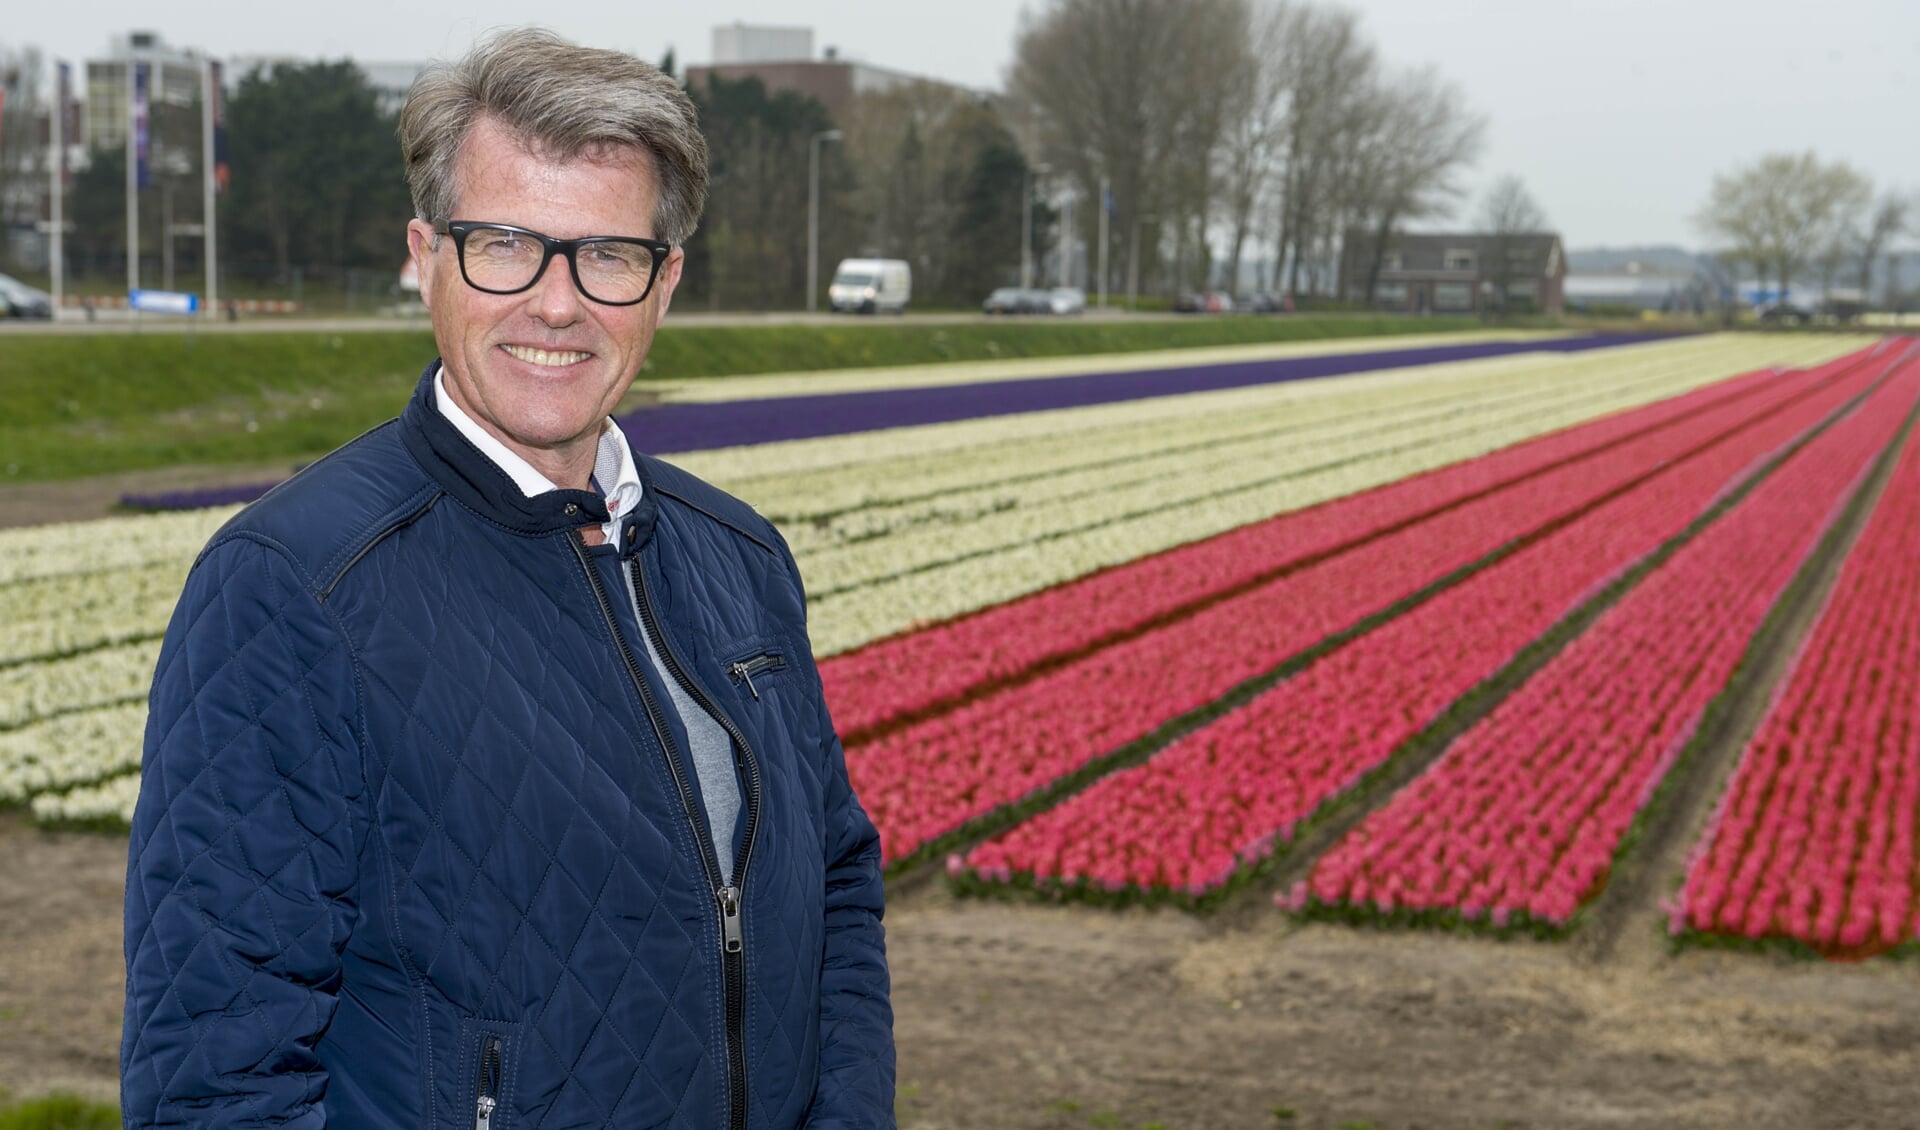 Corso-voorzitter Willem Heemskerk is trots dat Dirk Kuijt dit jaar het Bloemencorso van de Bollenstreek opent. | Foto: Willem Krol